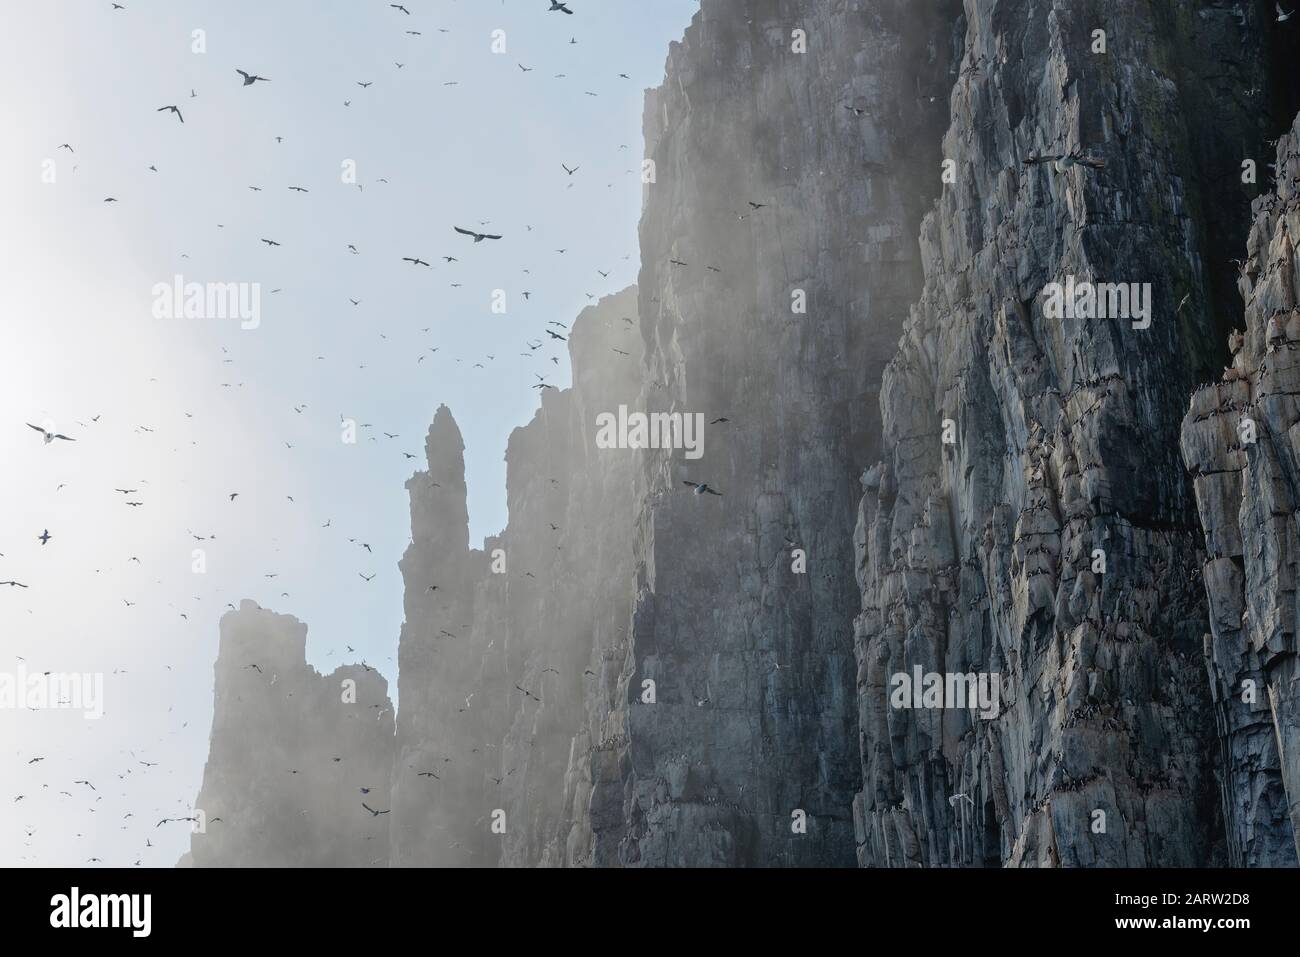 Thick-billed murres (Uria lomvia), colony, Alkefjellet bird cliff, Hinlopen Strait, Spitsbergen, Svalbard, Norway Stock Photo